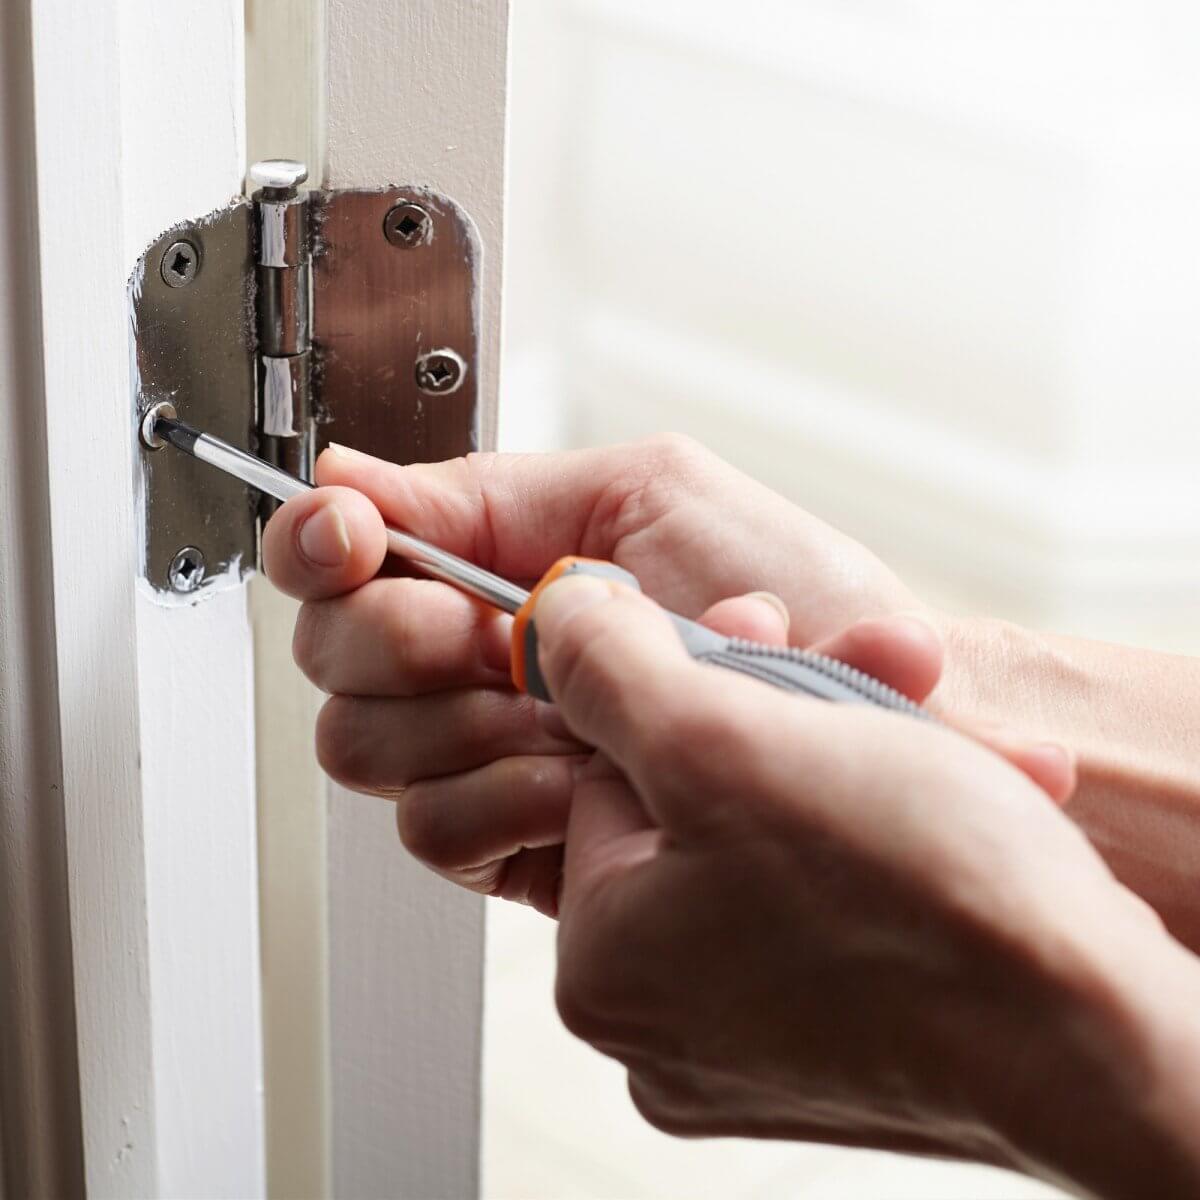 HOW TO REPLACE DOOR HINGES FOR INTERIOR DOORS